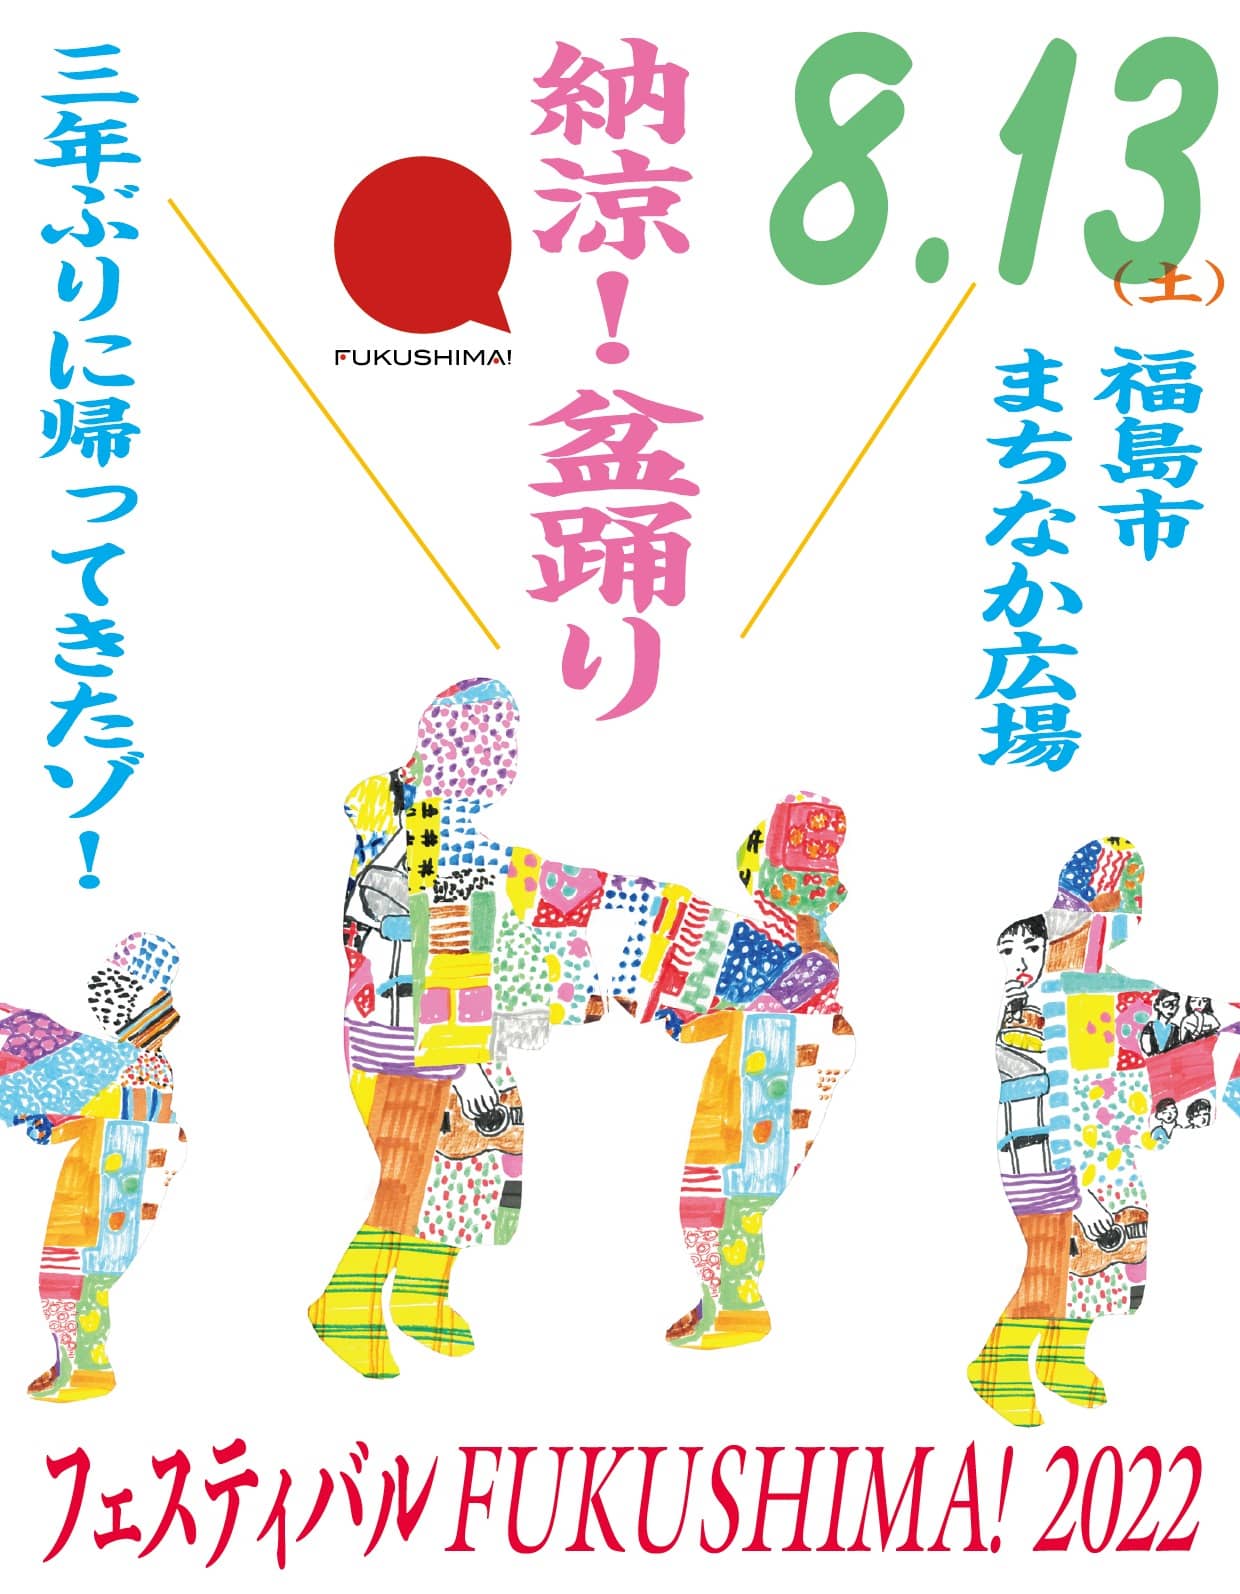 festival fukushima 13 aout 2022